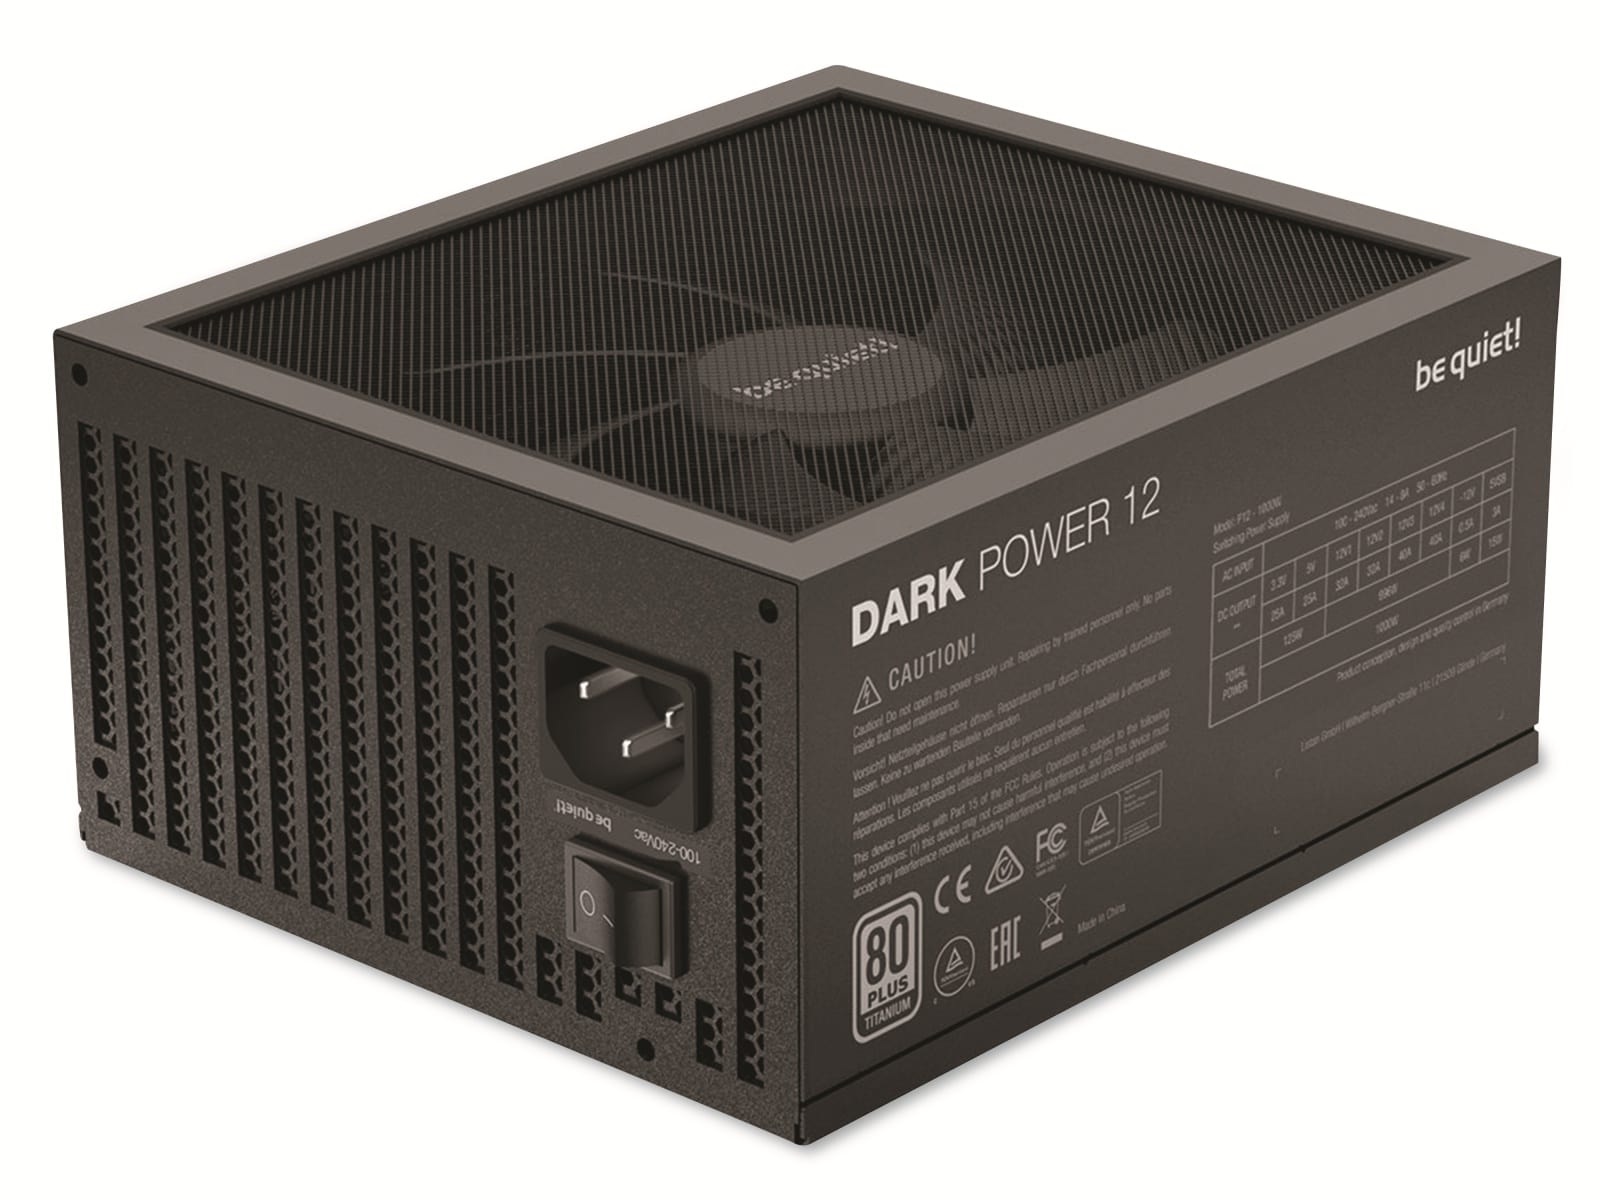 BE QUIET! PC-Netzteil Dark Power 12, 850W, 80+ Titanium, Kabelmanagement